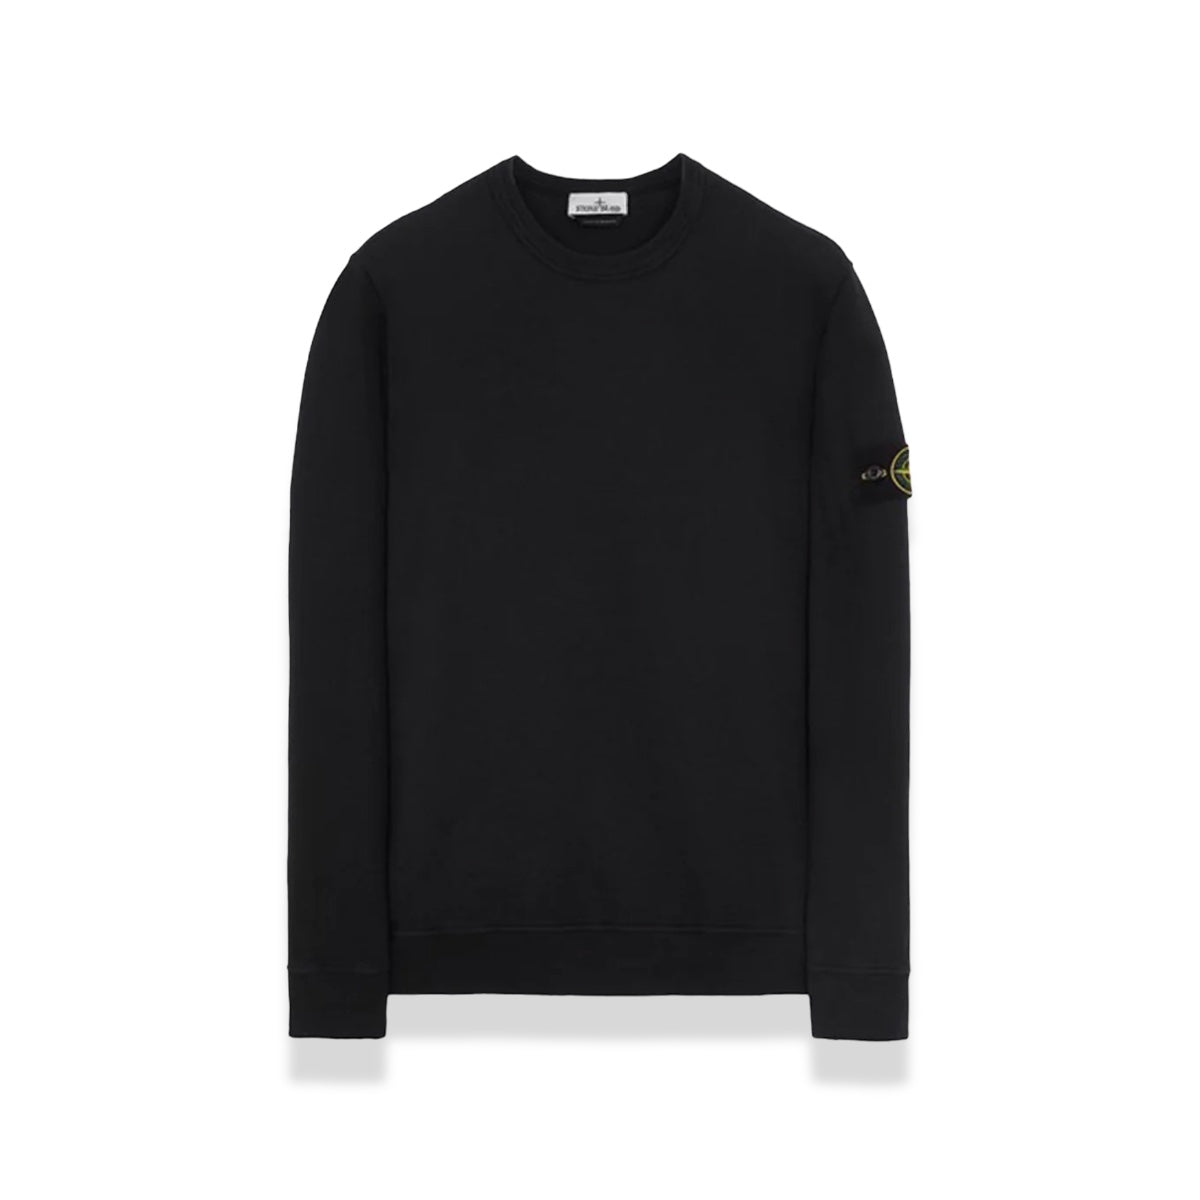 Stone Island - Fleece Sweatshirt Black